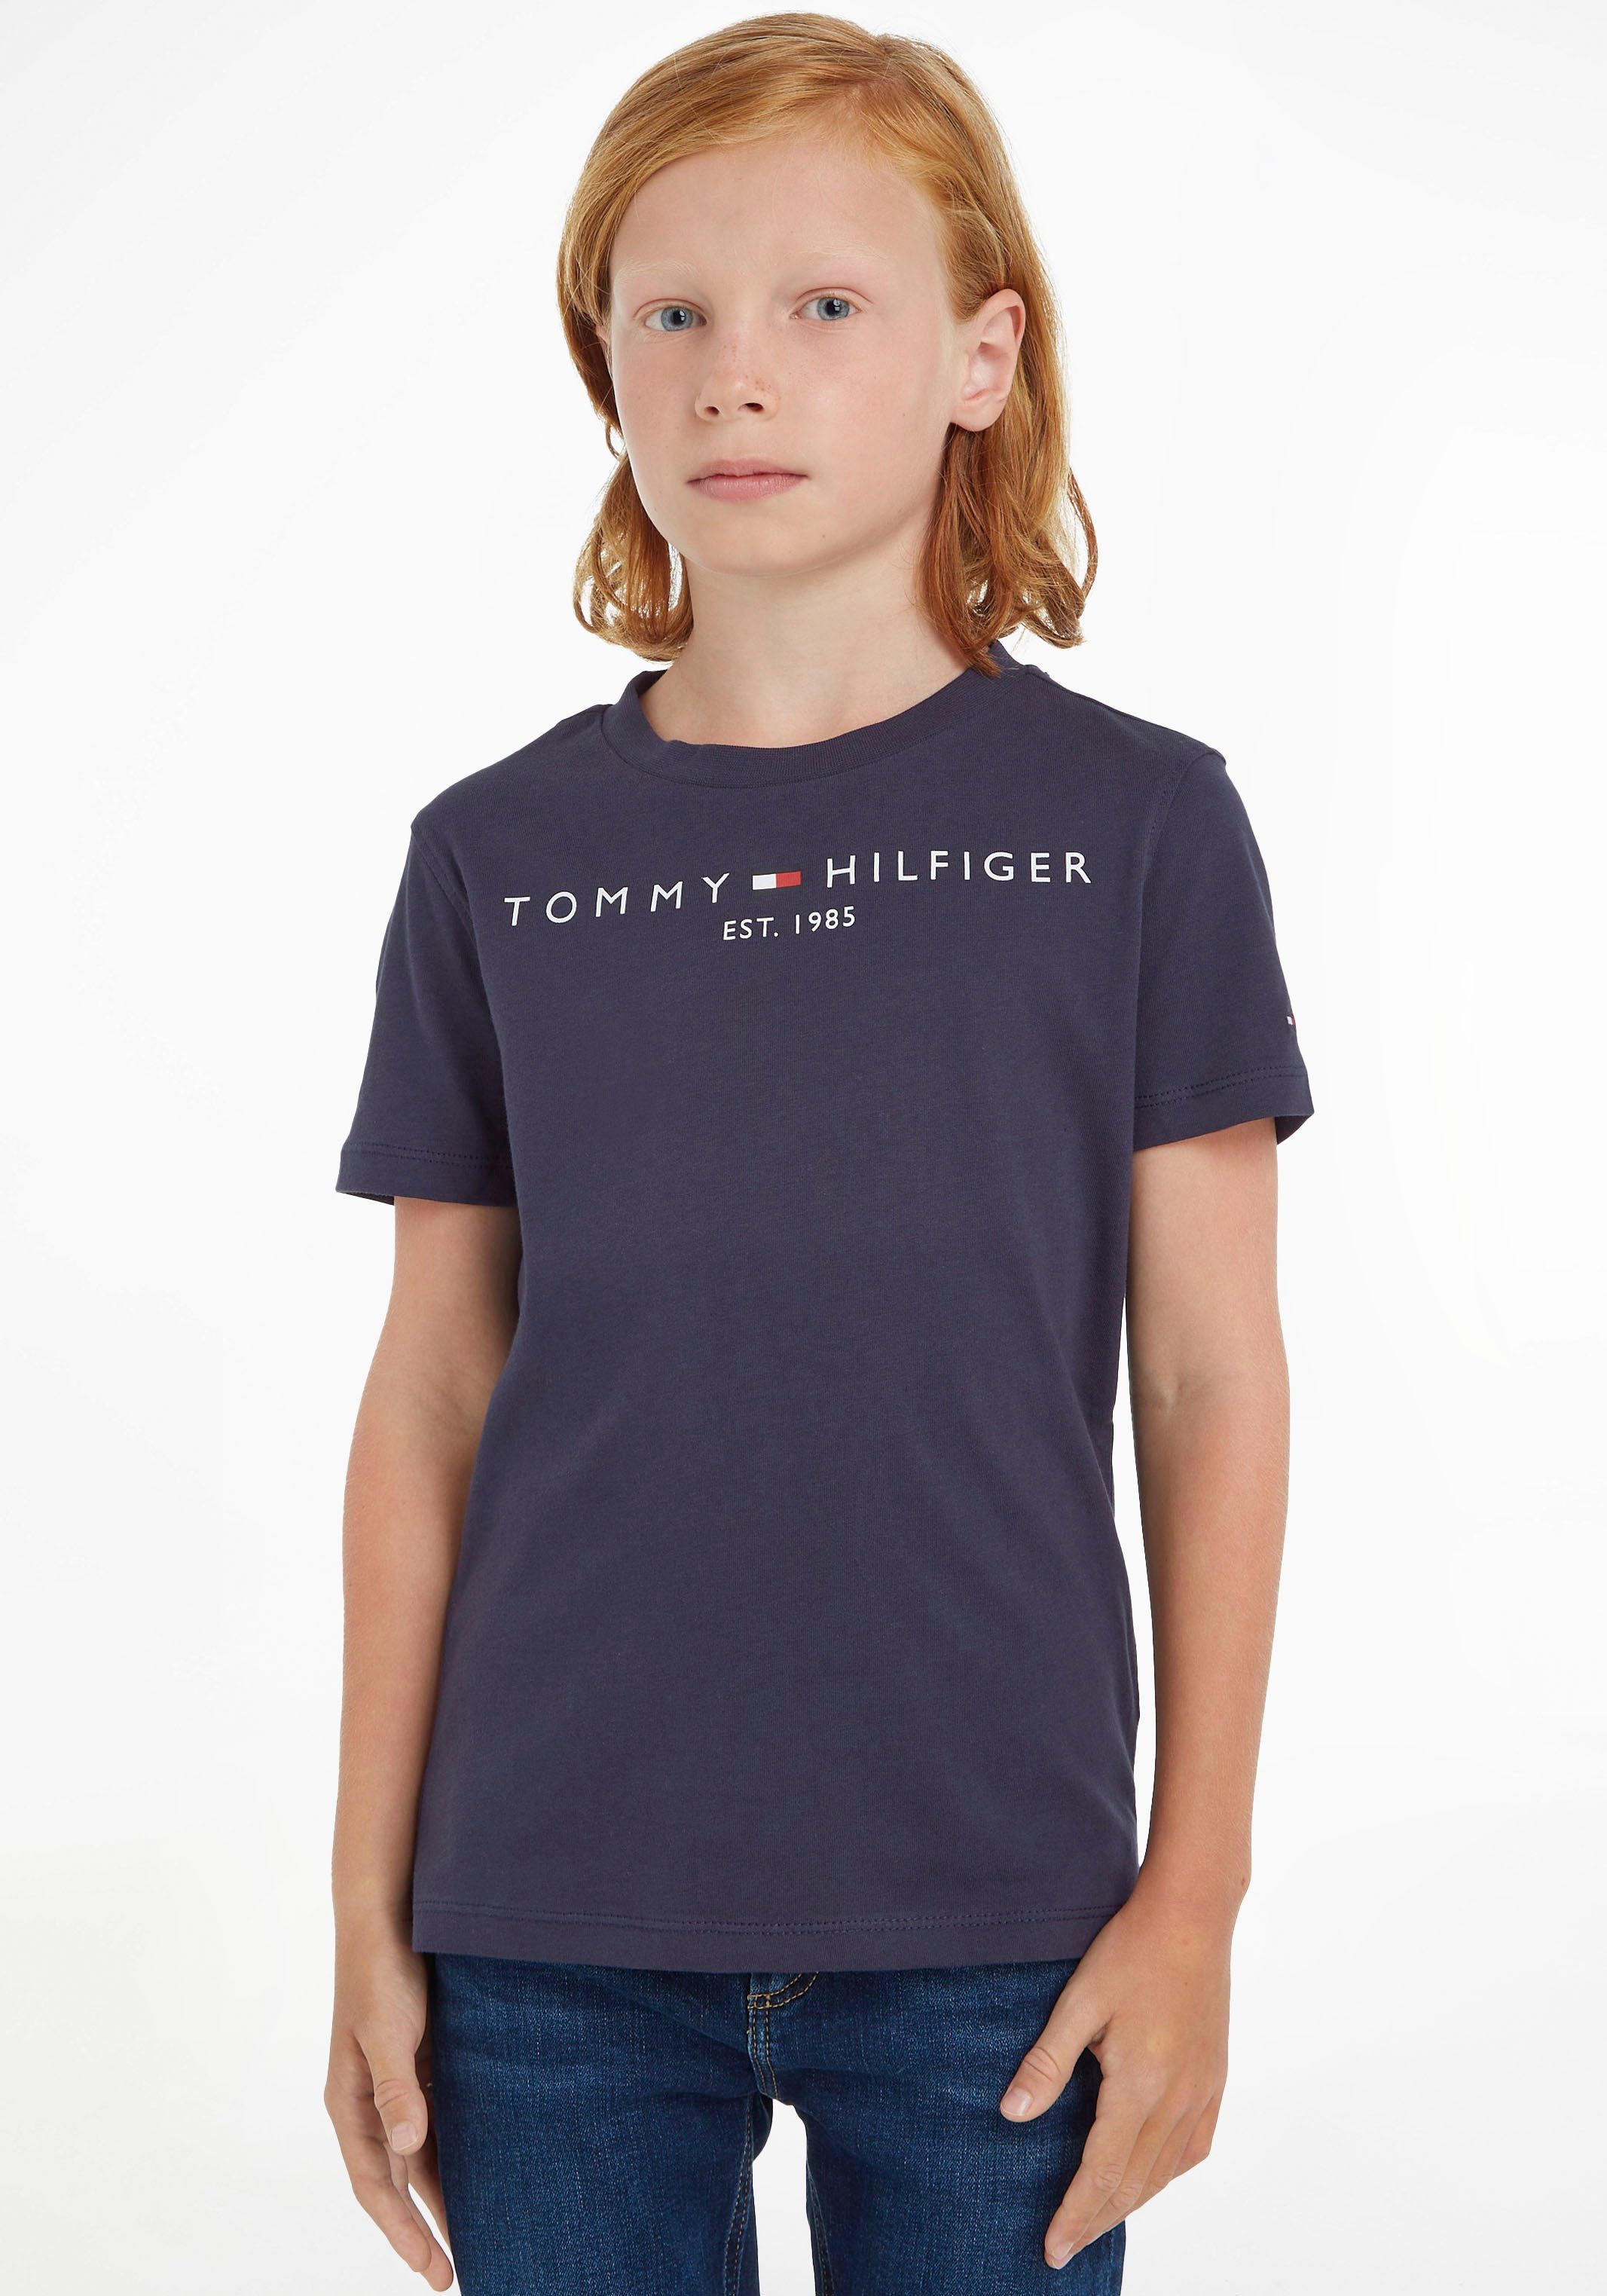 Tommy Hilfiger T-Shirt ESSENTIAL TEE Kinder Kids Junior MiniMe,für Jungen  und Mädchen, Hinten mit kleinem Flaglabel am Ausschnitt | T-Shirts